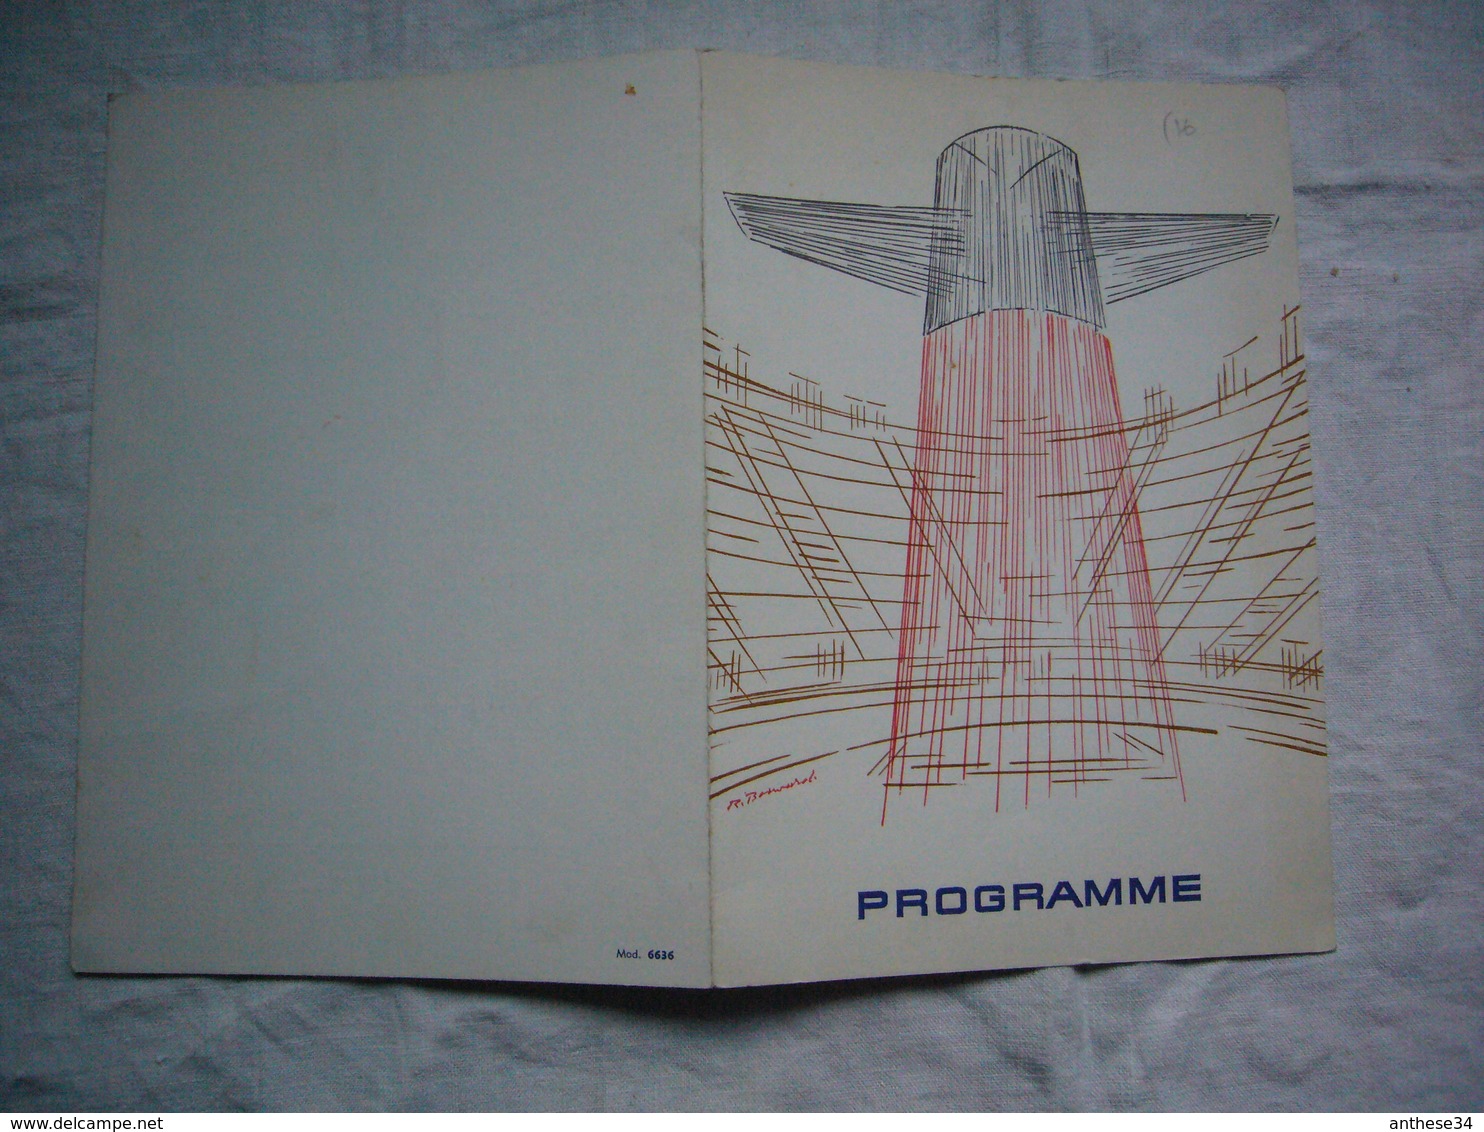 Programme Du Paquebot France 1974 Soirée De Gala - Programs